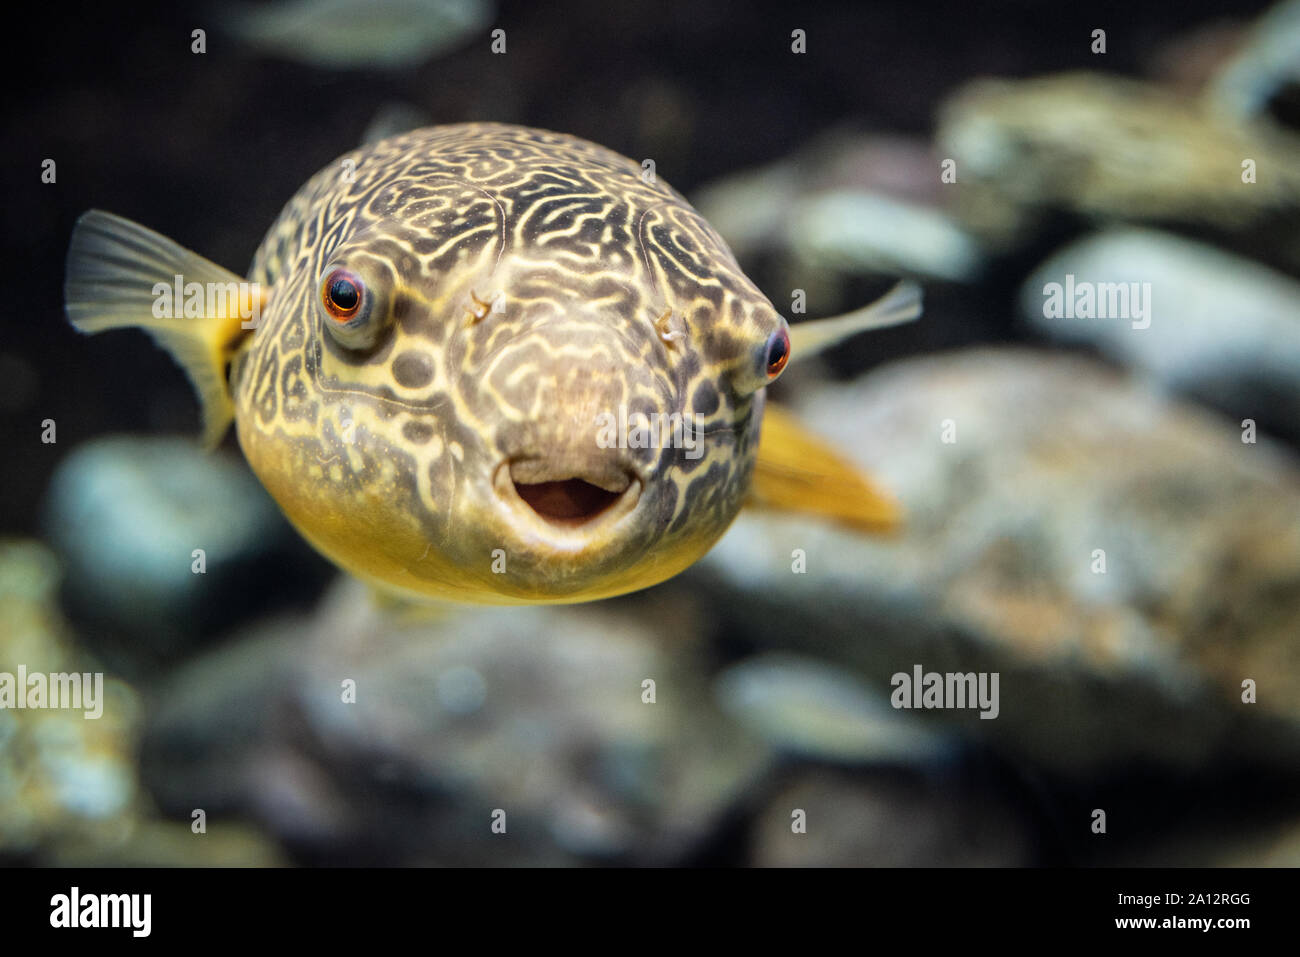 Pesce Palla Carnivoro D'acqua Dolce Immagini e Fotos Stock - Alamy